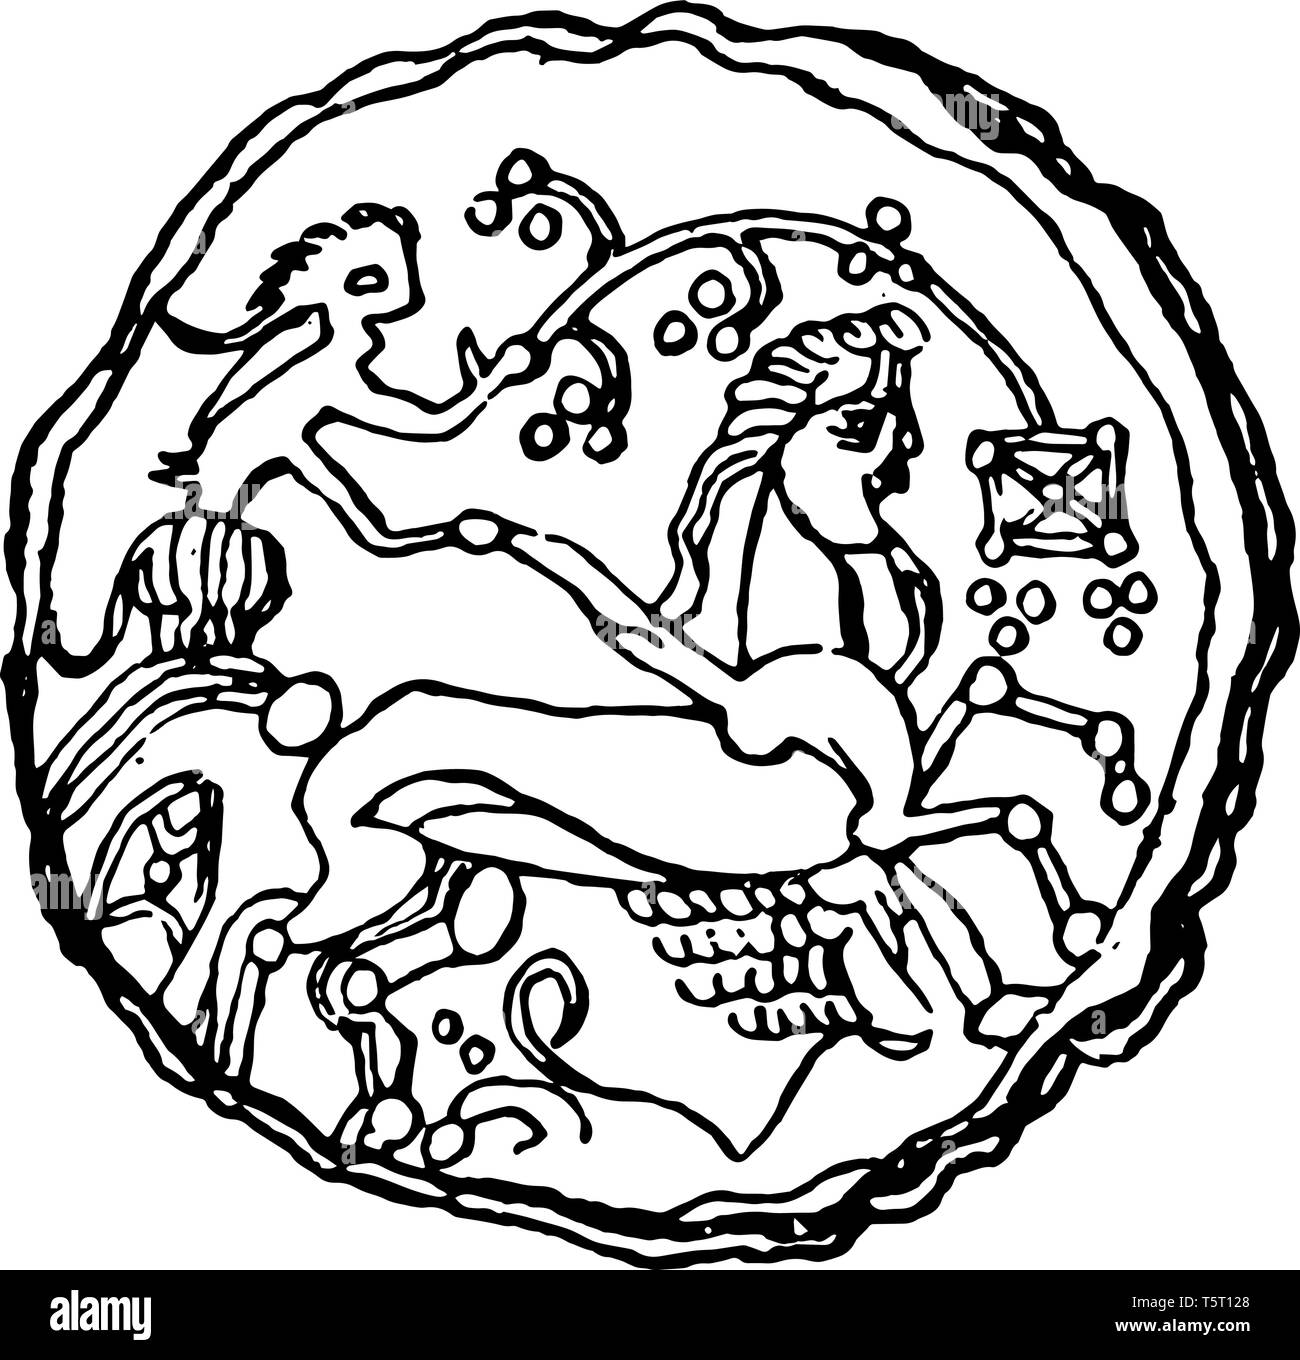 Coin en relief d'un homme monté sur le cheval, chariot vintage dessin ou gravure illustration. Illustration de Vecteur